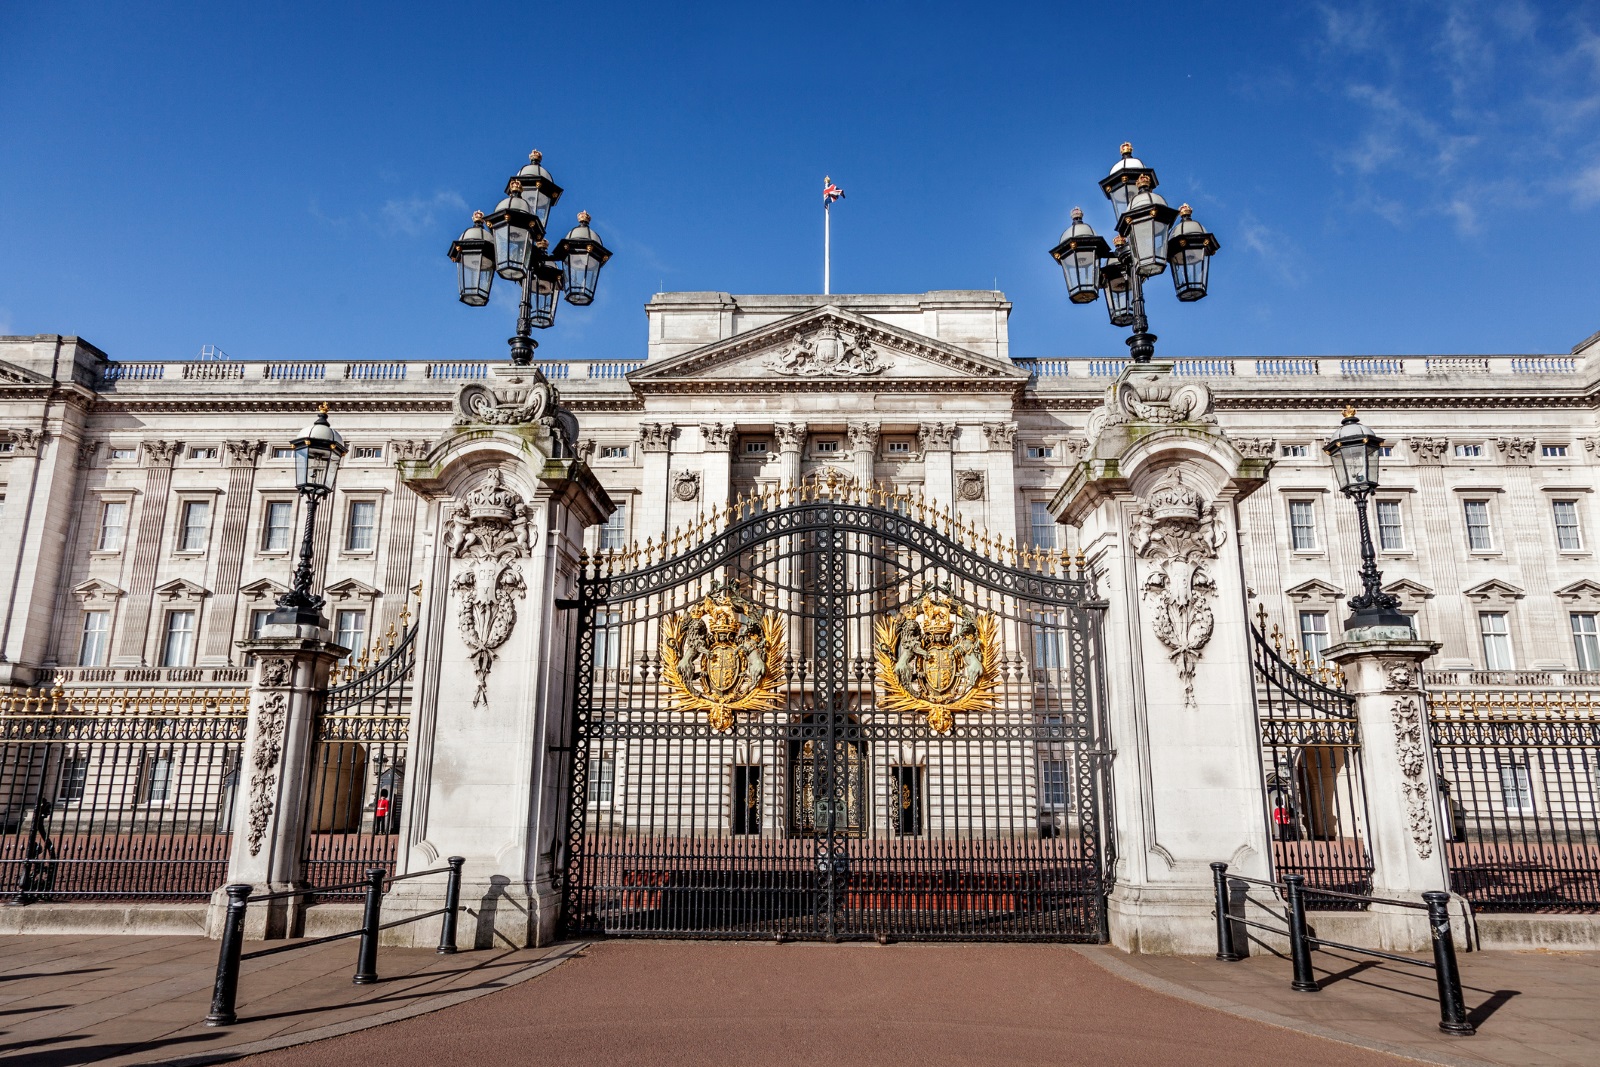 Бъкингамският дворец, Лондон, Великобритания<br />
Дворецът е официалната резиденция на британската монархия от 1837 година насам. Във внушителната сграда има 775 стаи, като от тях 52 са спални за членовете на кралското семейство, 188 спални за персонала, 92 кабинета и 78 бани.